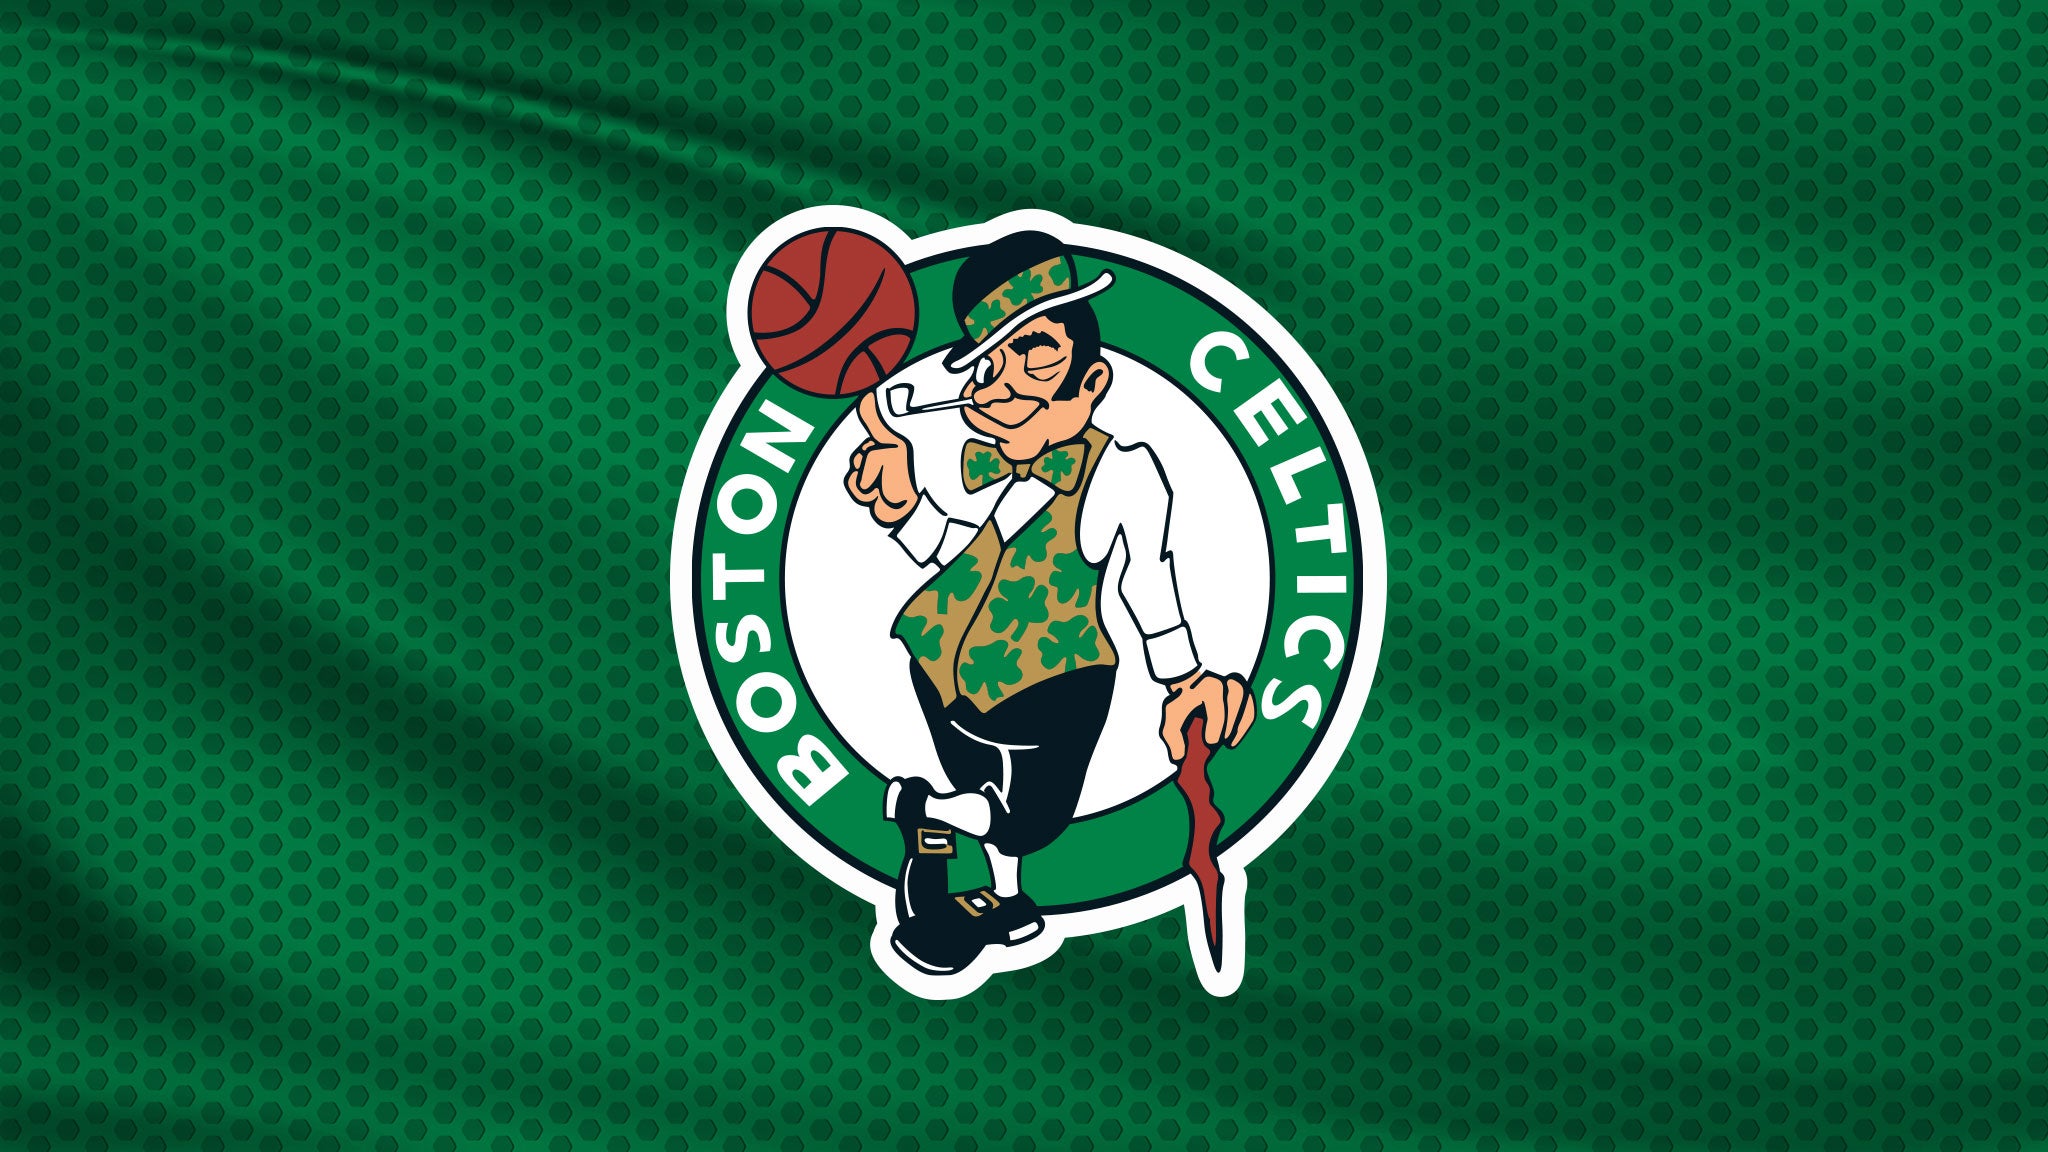 NBA Finals: TBD at Celtics Rd 4 Hm Gm 1